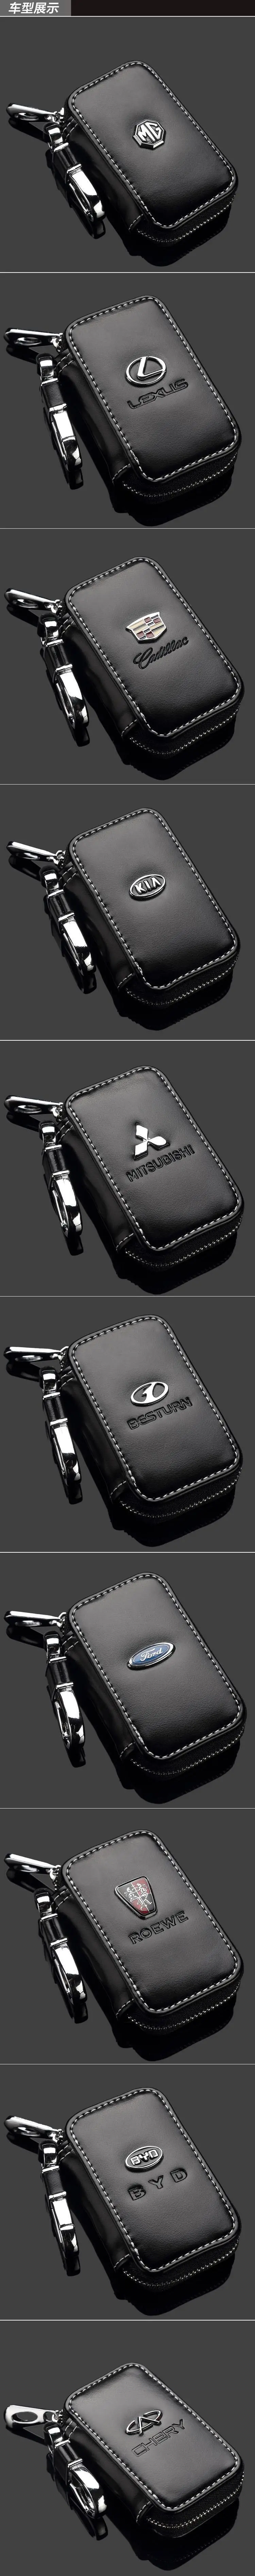 Современный ключ современный Ix35 бренд Shengda Yuet Sonata Rena автомобильный чехол для ключей из натуральной кожи